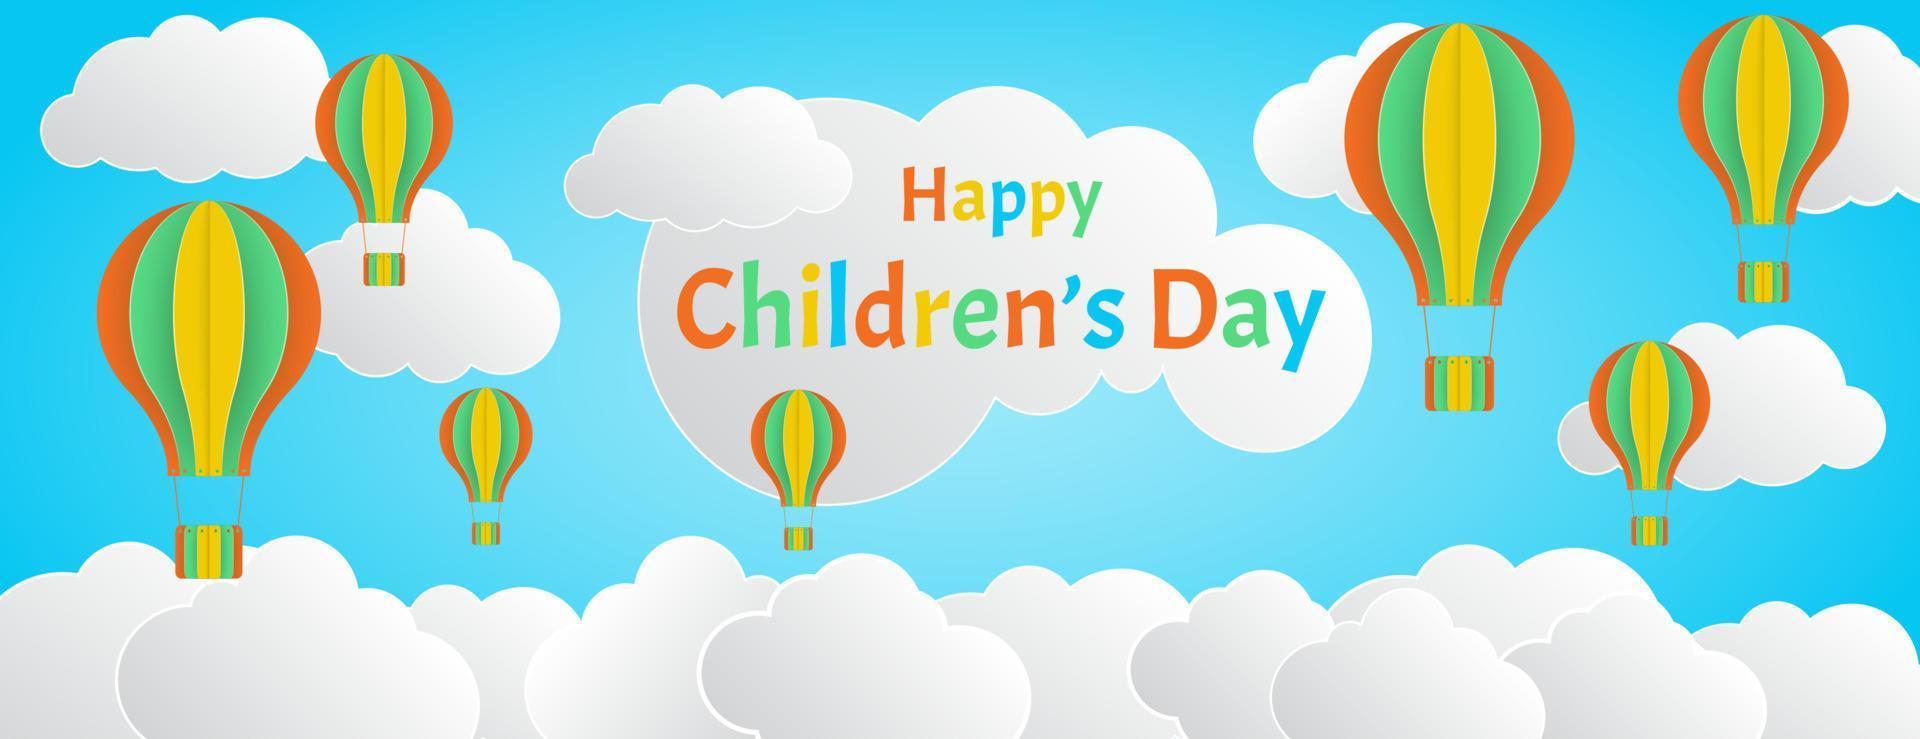 modello di banner per lo stile del taglio della carta per la festa dei bambini felice, sfondo del cielo con decorazioni colorate a palloncino e nuvole vettore